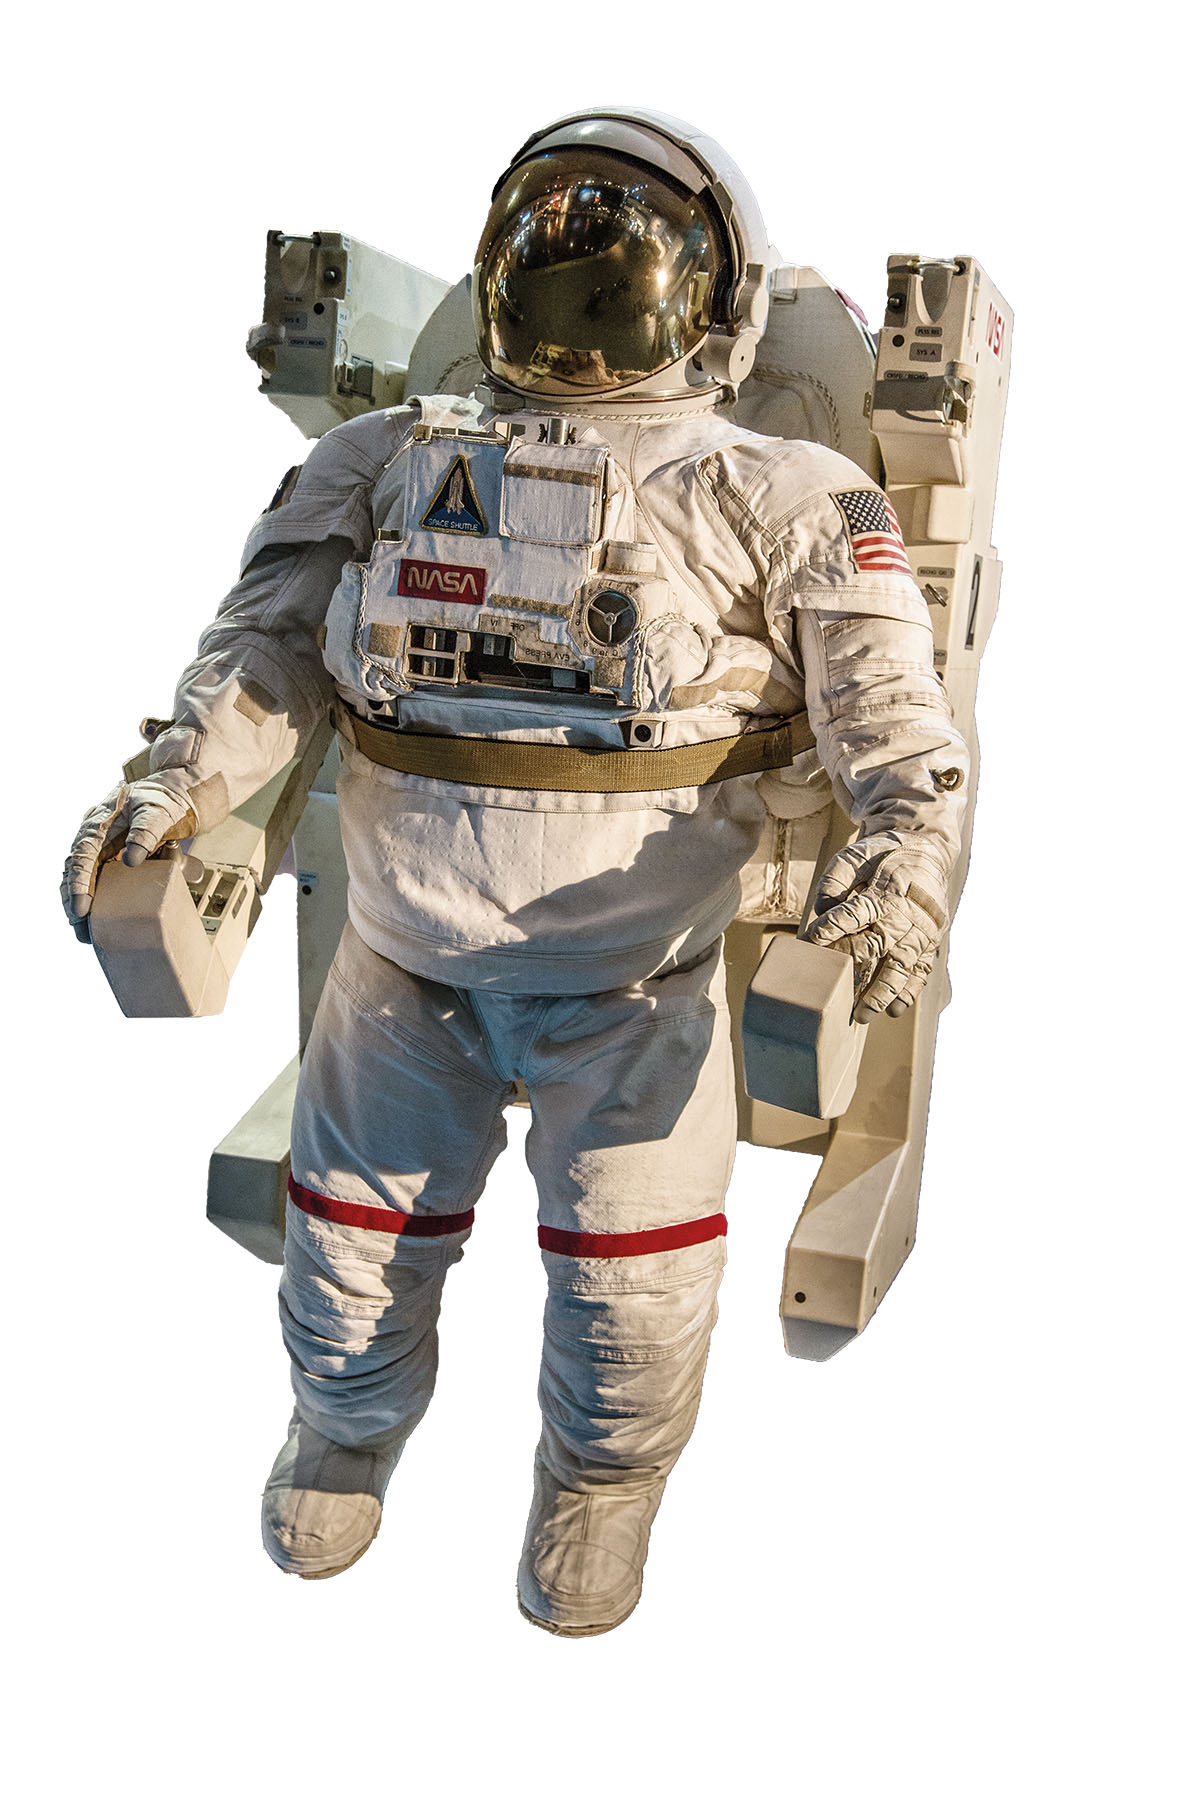 An astronaut suit